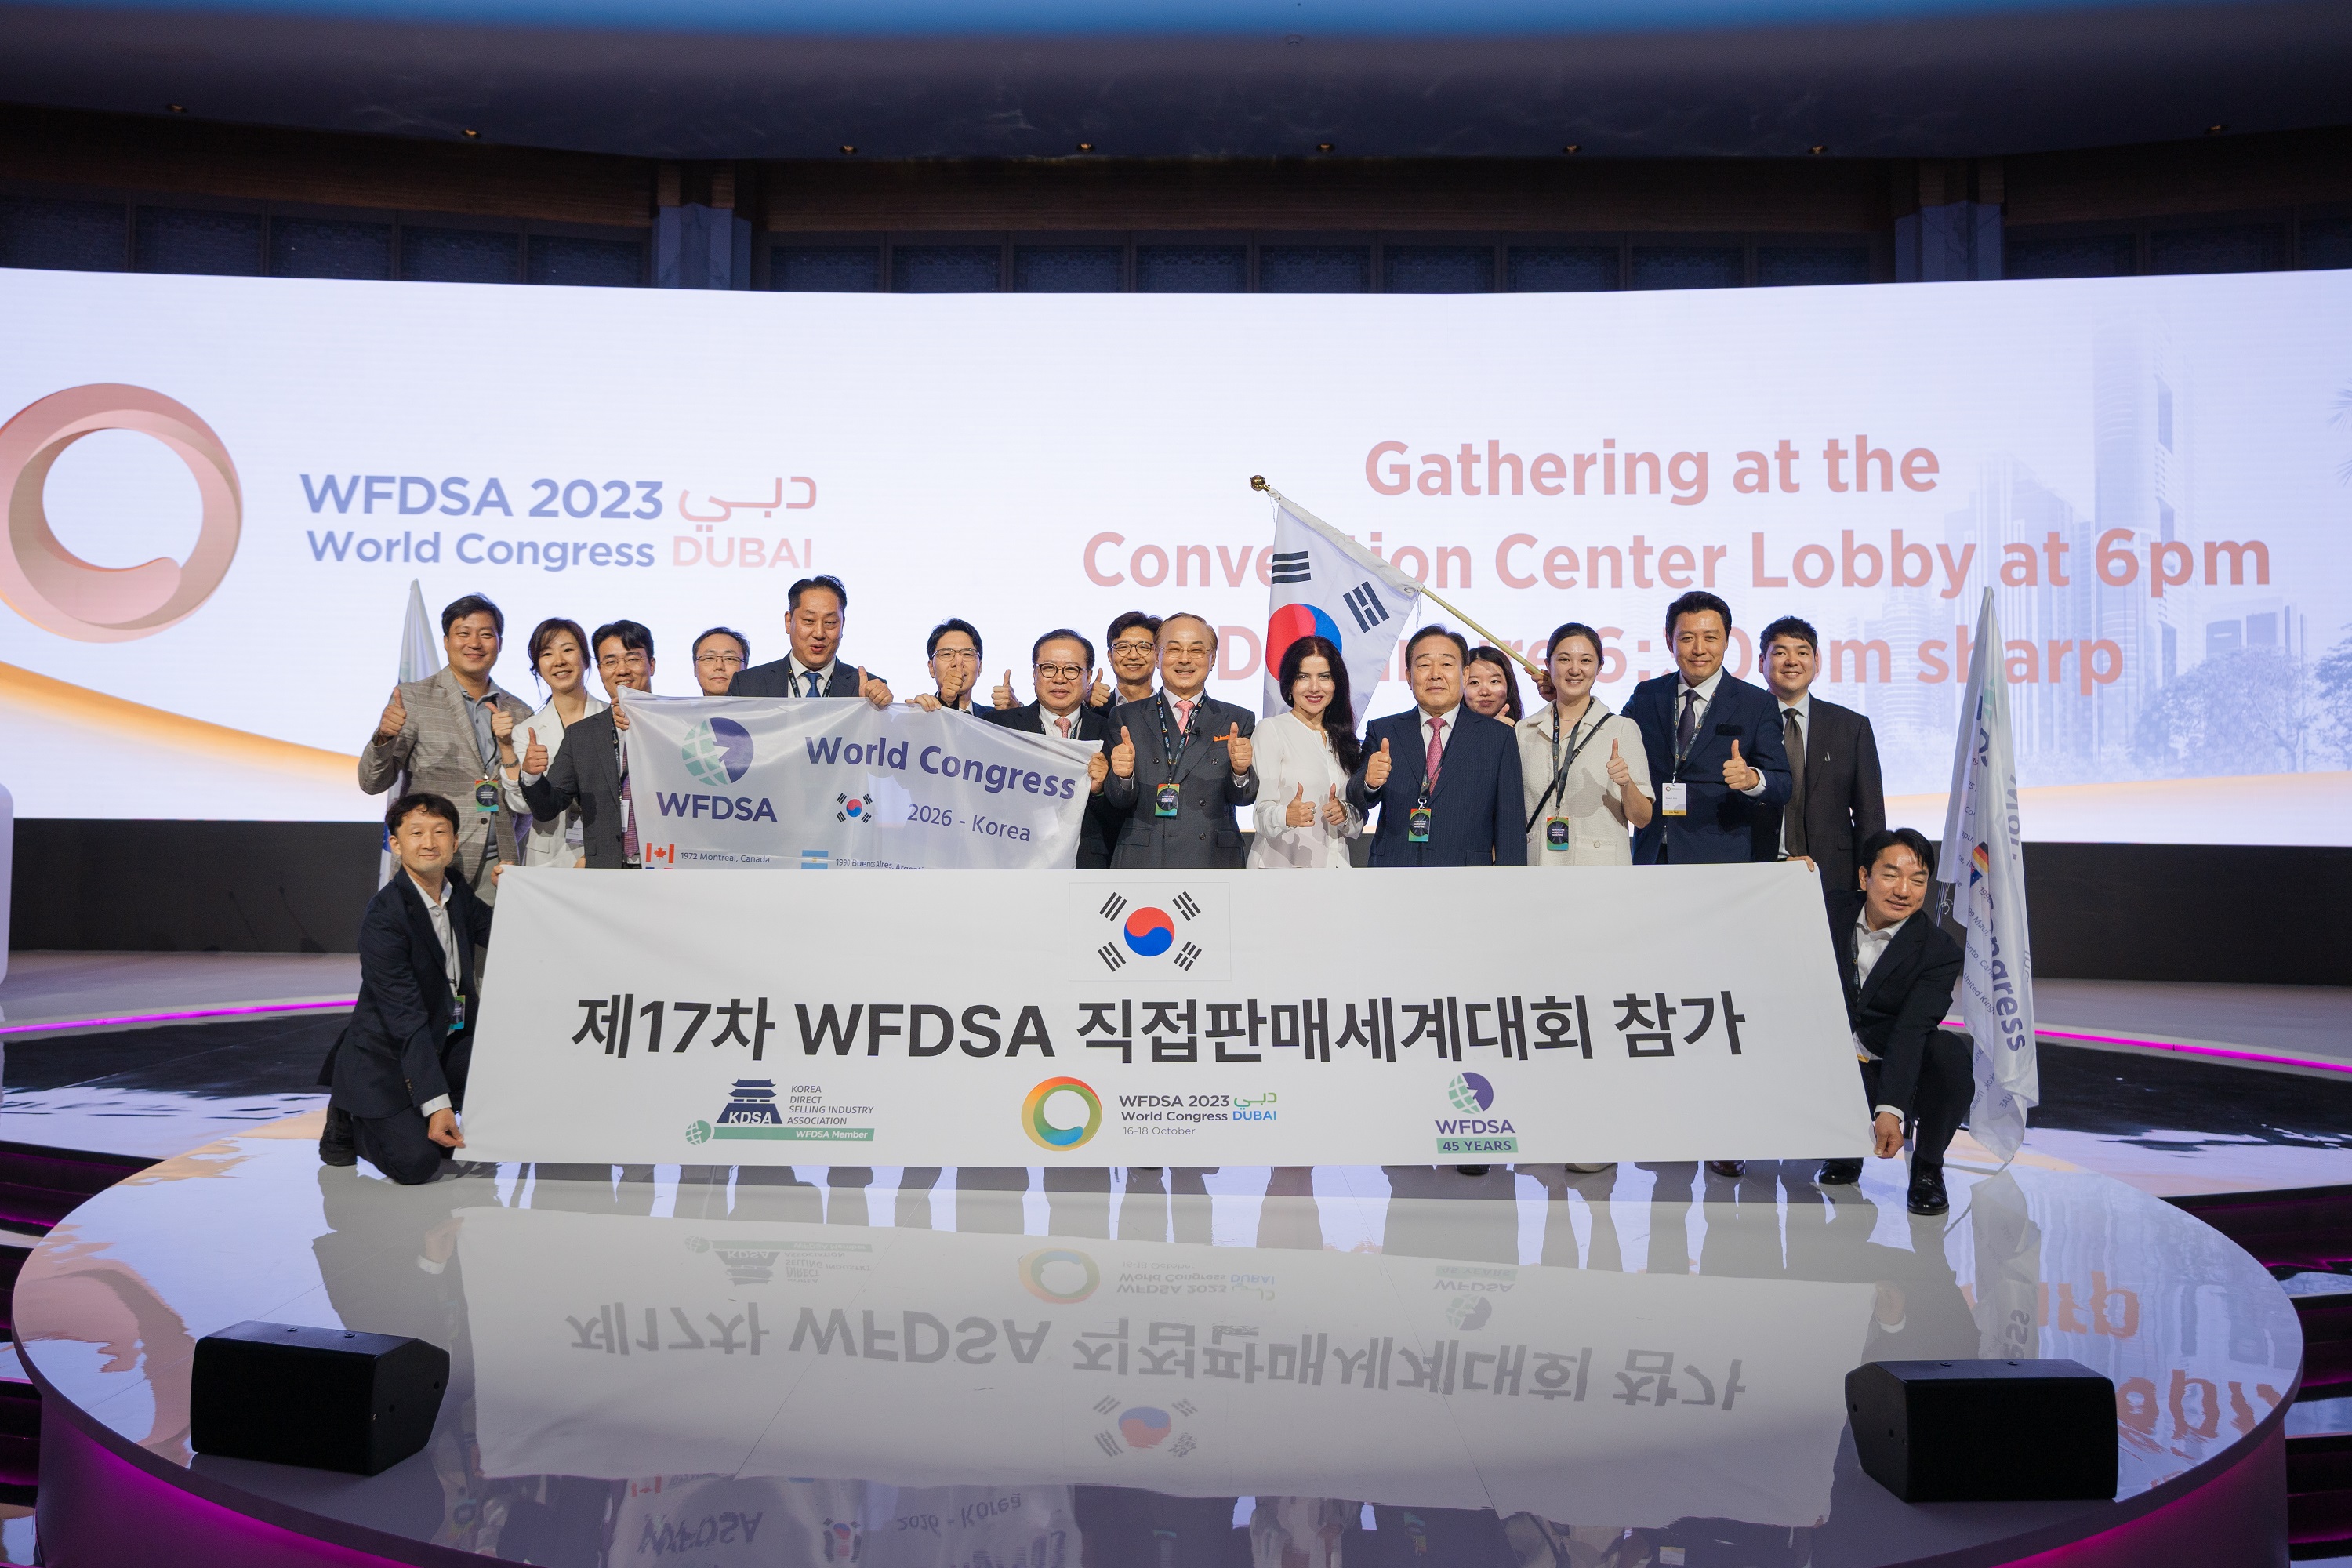 สมาคมอุตสาหกรรมขายตรงเกาหลีเป็นเจ้าภาพจัดการประชุม WFDSA World Congress ปี 2026